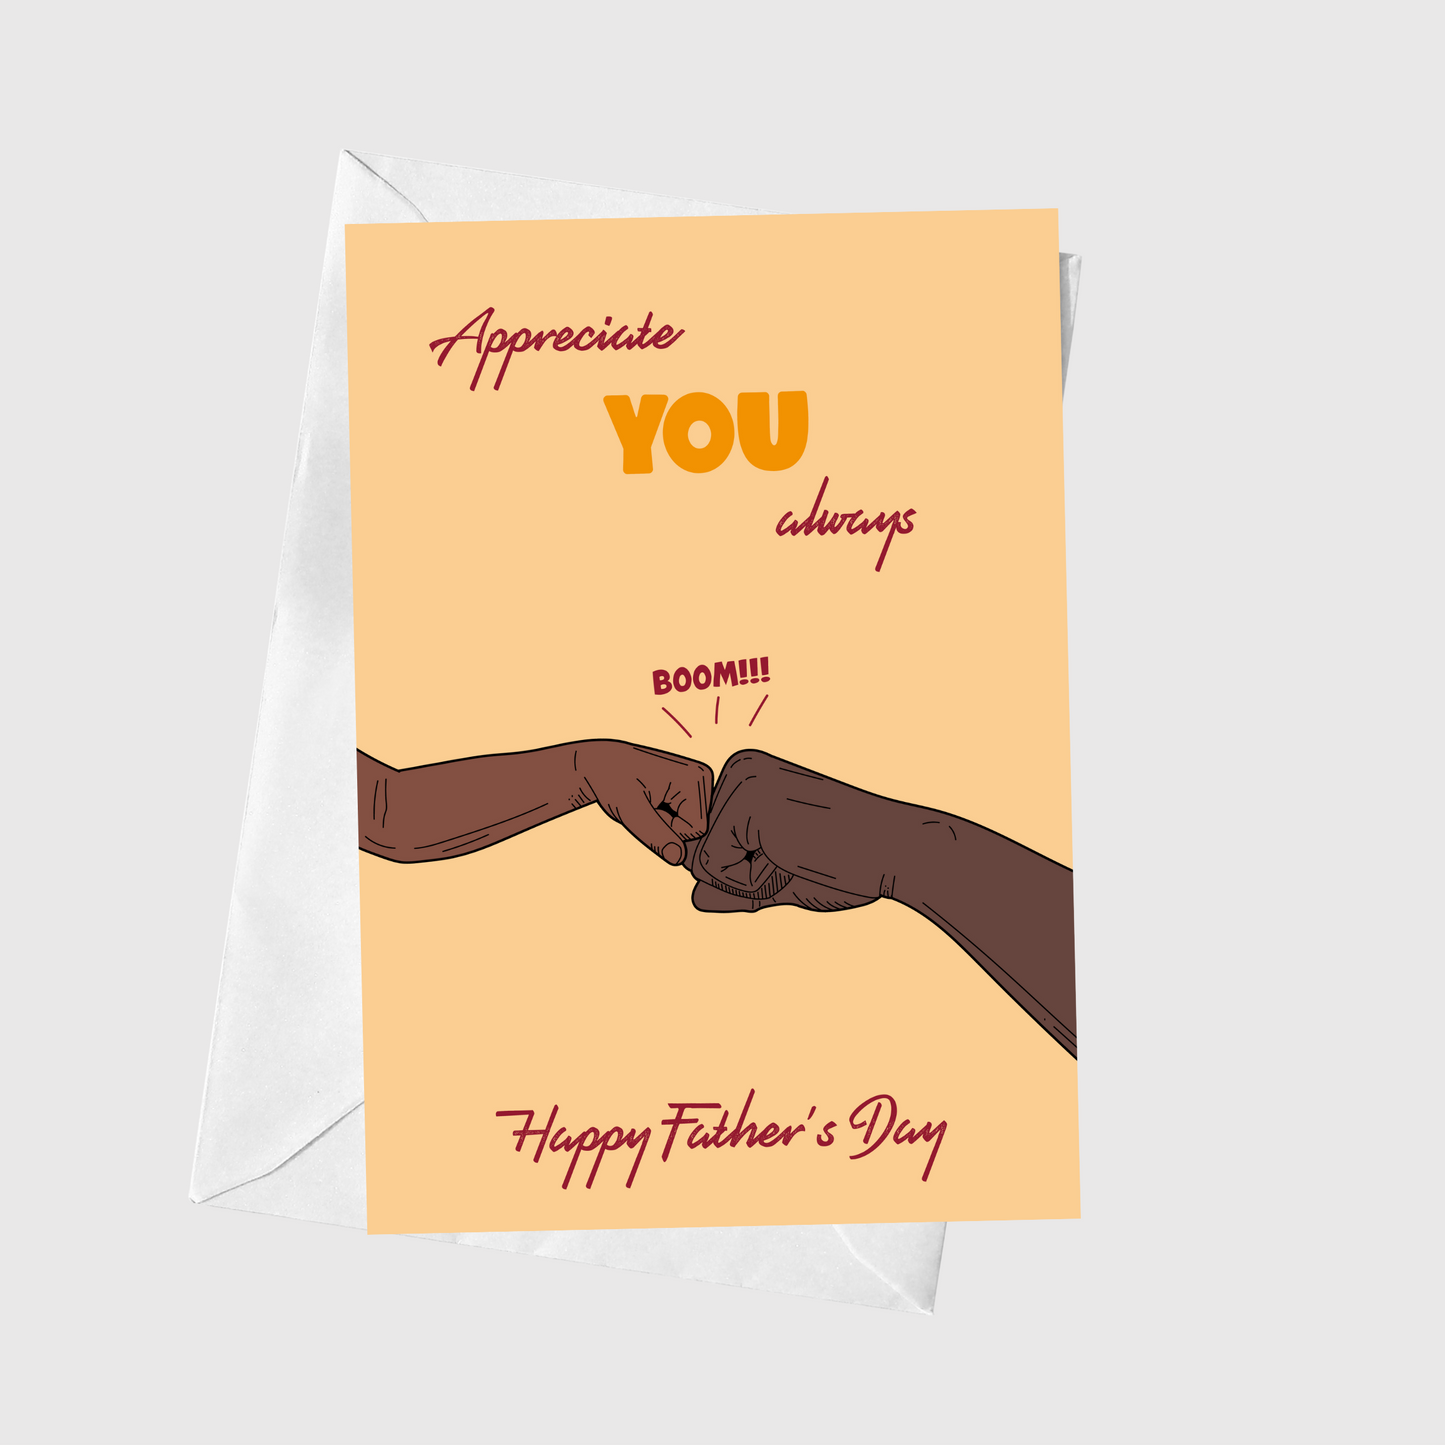 Appreciate You Always - Happy Father's Day